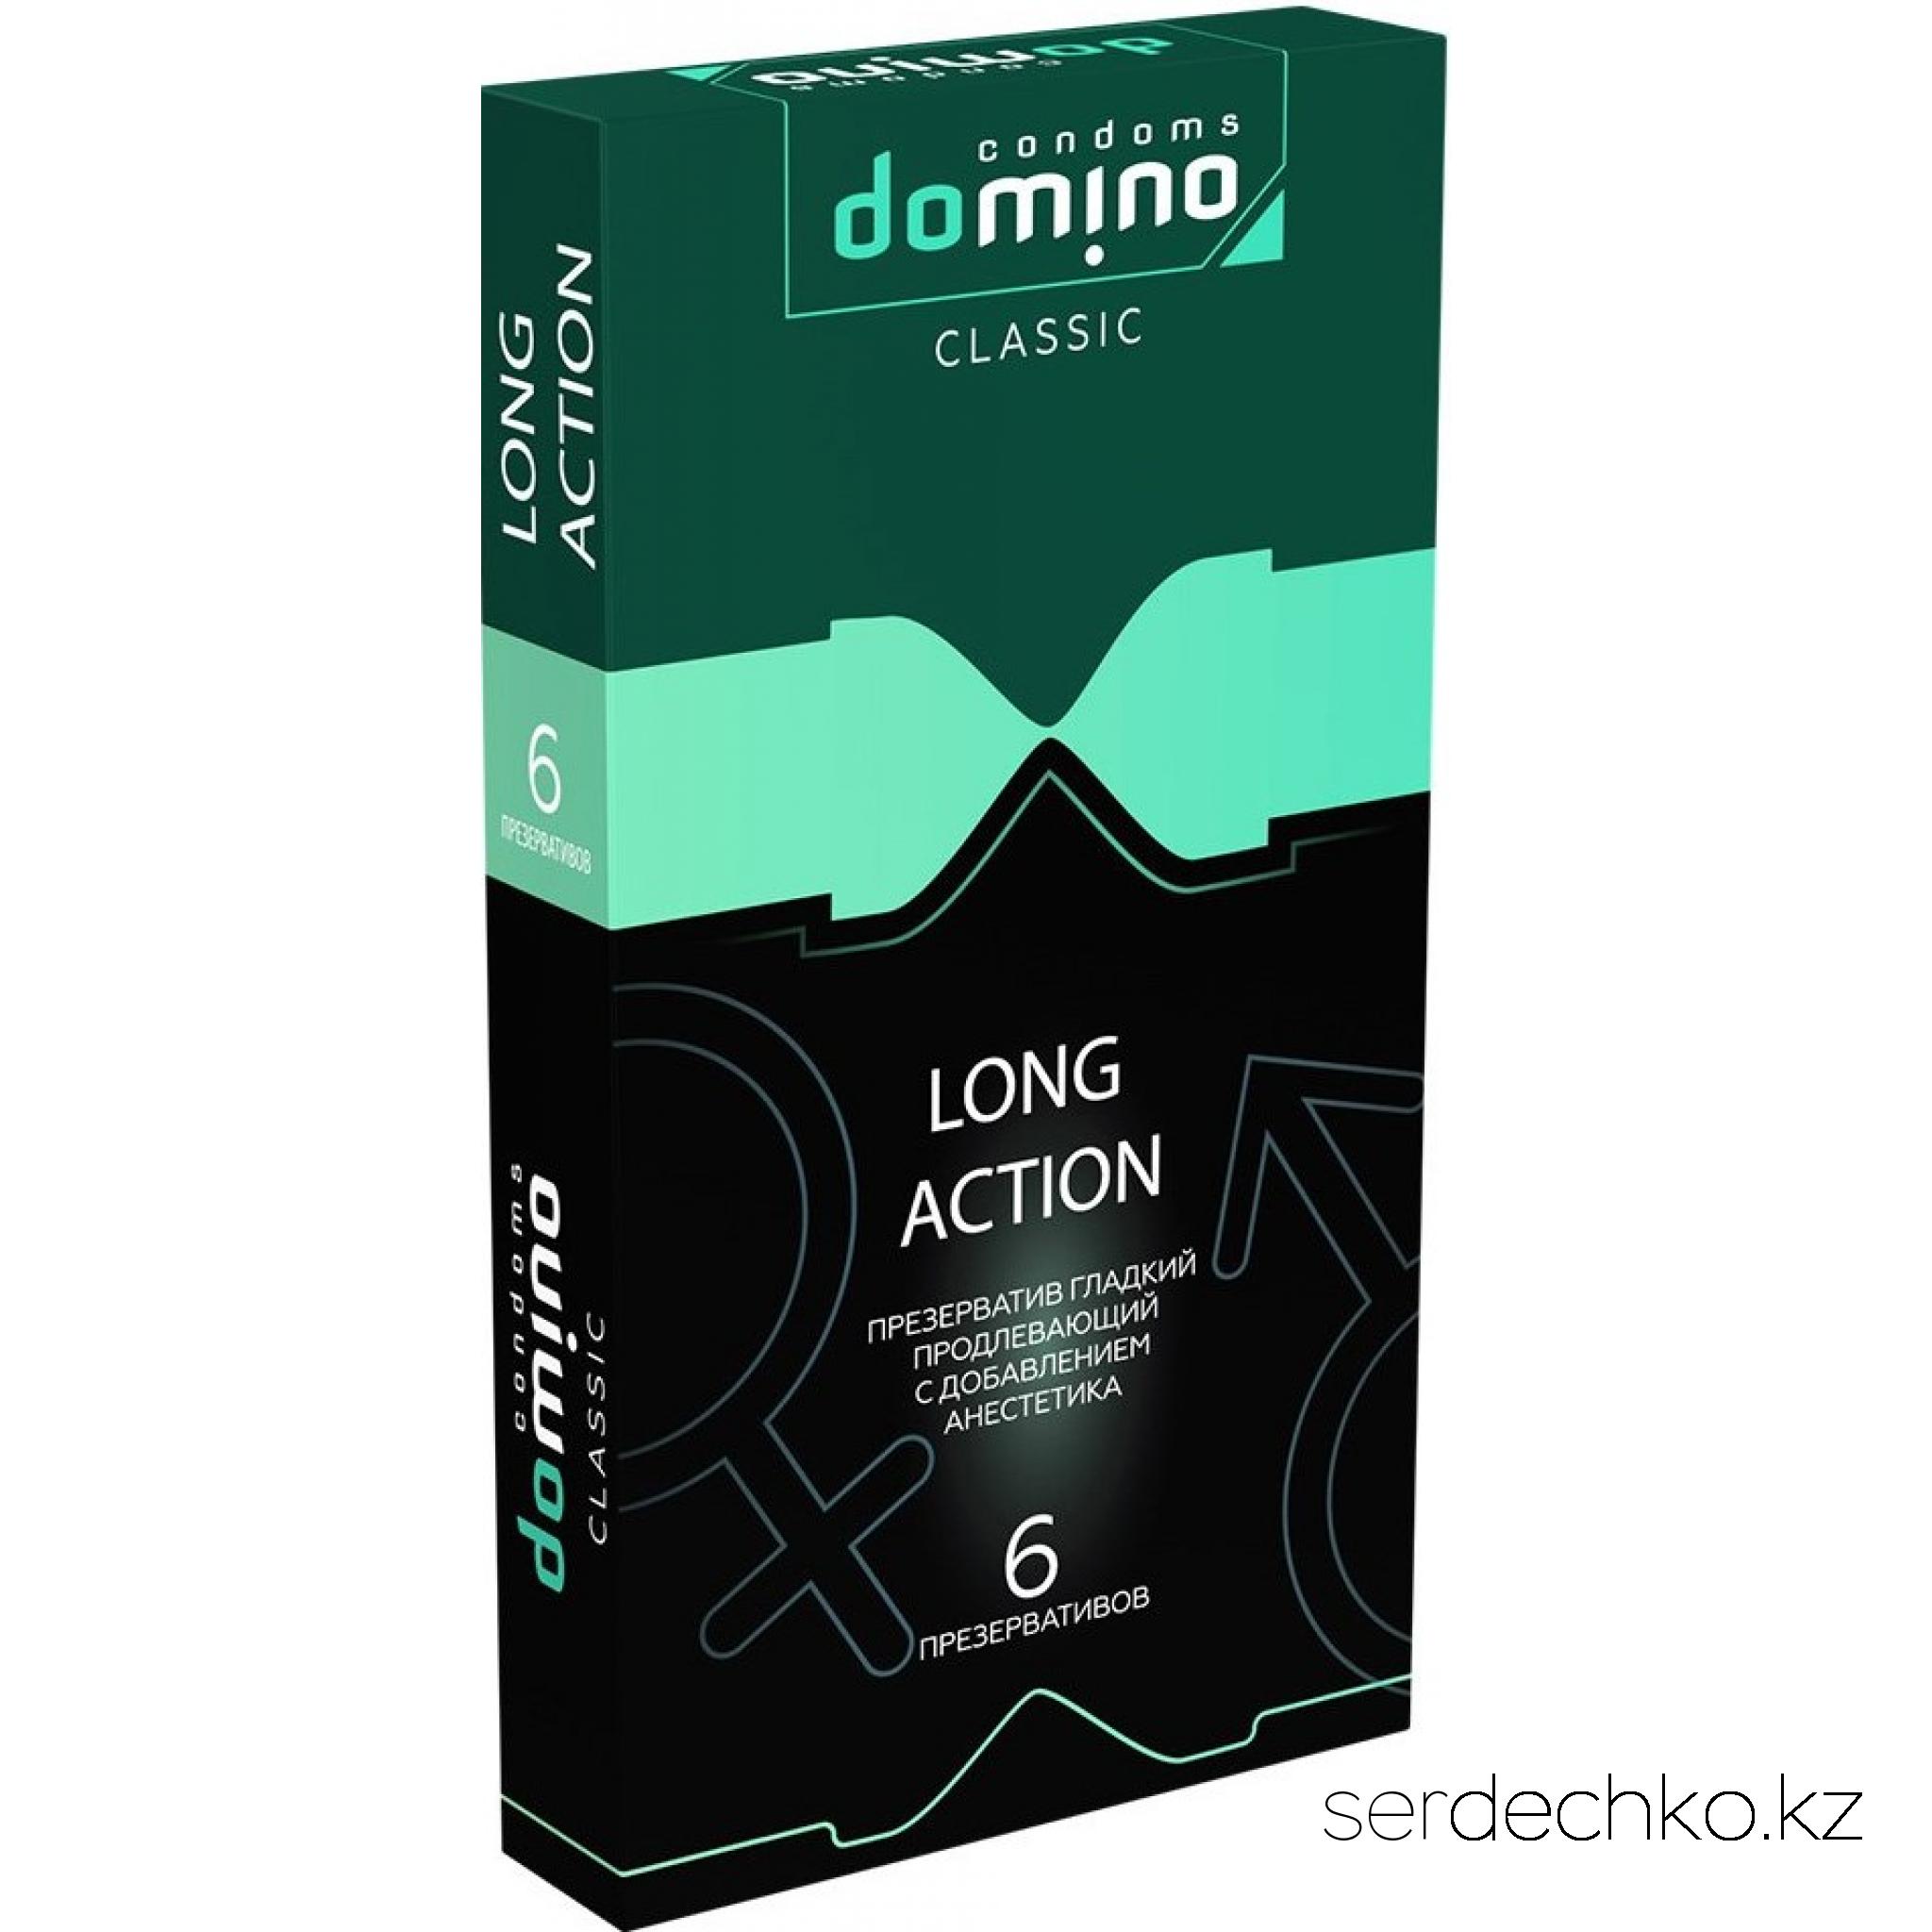 ПРЕЗЕРВАТИВЫ DOMINO CLASSIC LONG ACTION 6 штук, 
	6 шт. пролонгирующих презервативов.(с добавлением анестетика)
	Длина 180 мм
	Ширина 52 мм
	Толщина 0,06 мм
